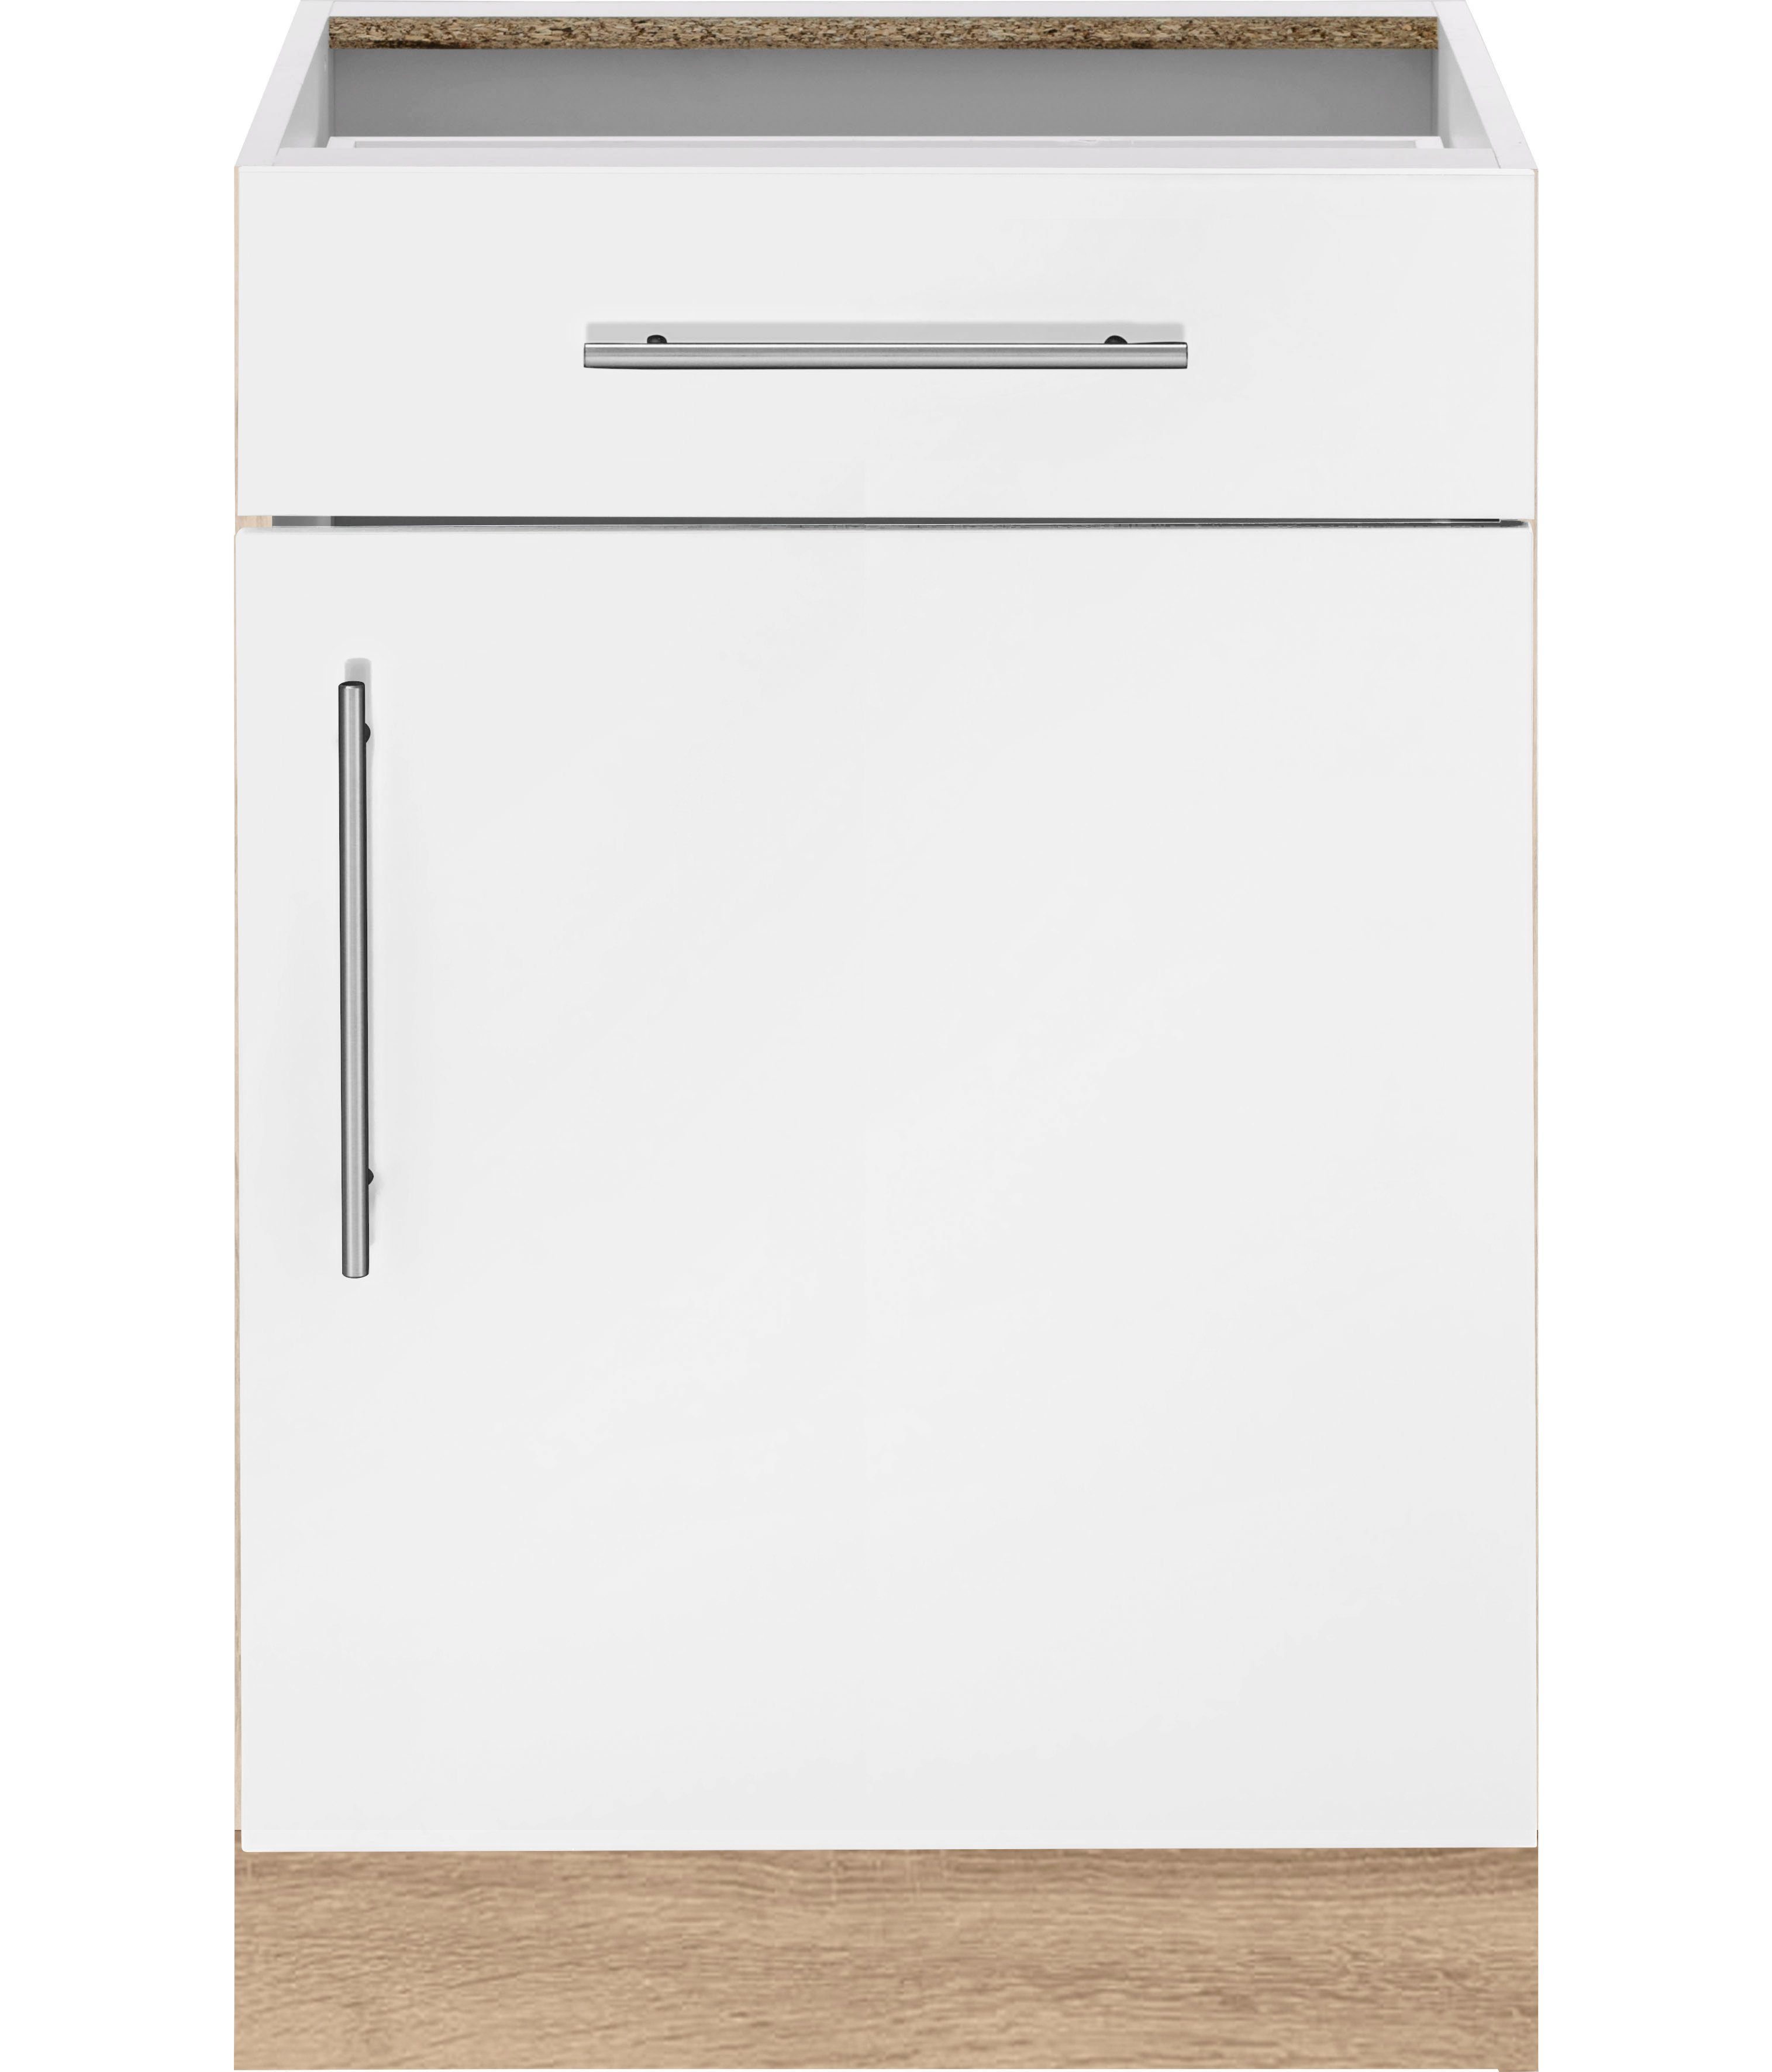 wiho Küchen Unterschrank Cali 60 cm breit, ohne Arbeitsplatte Front: Weiß matt, Korpus: Sonoma eichefarben | Eichefarben